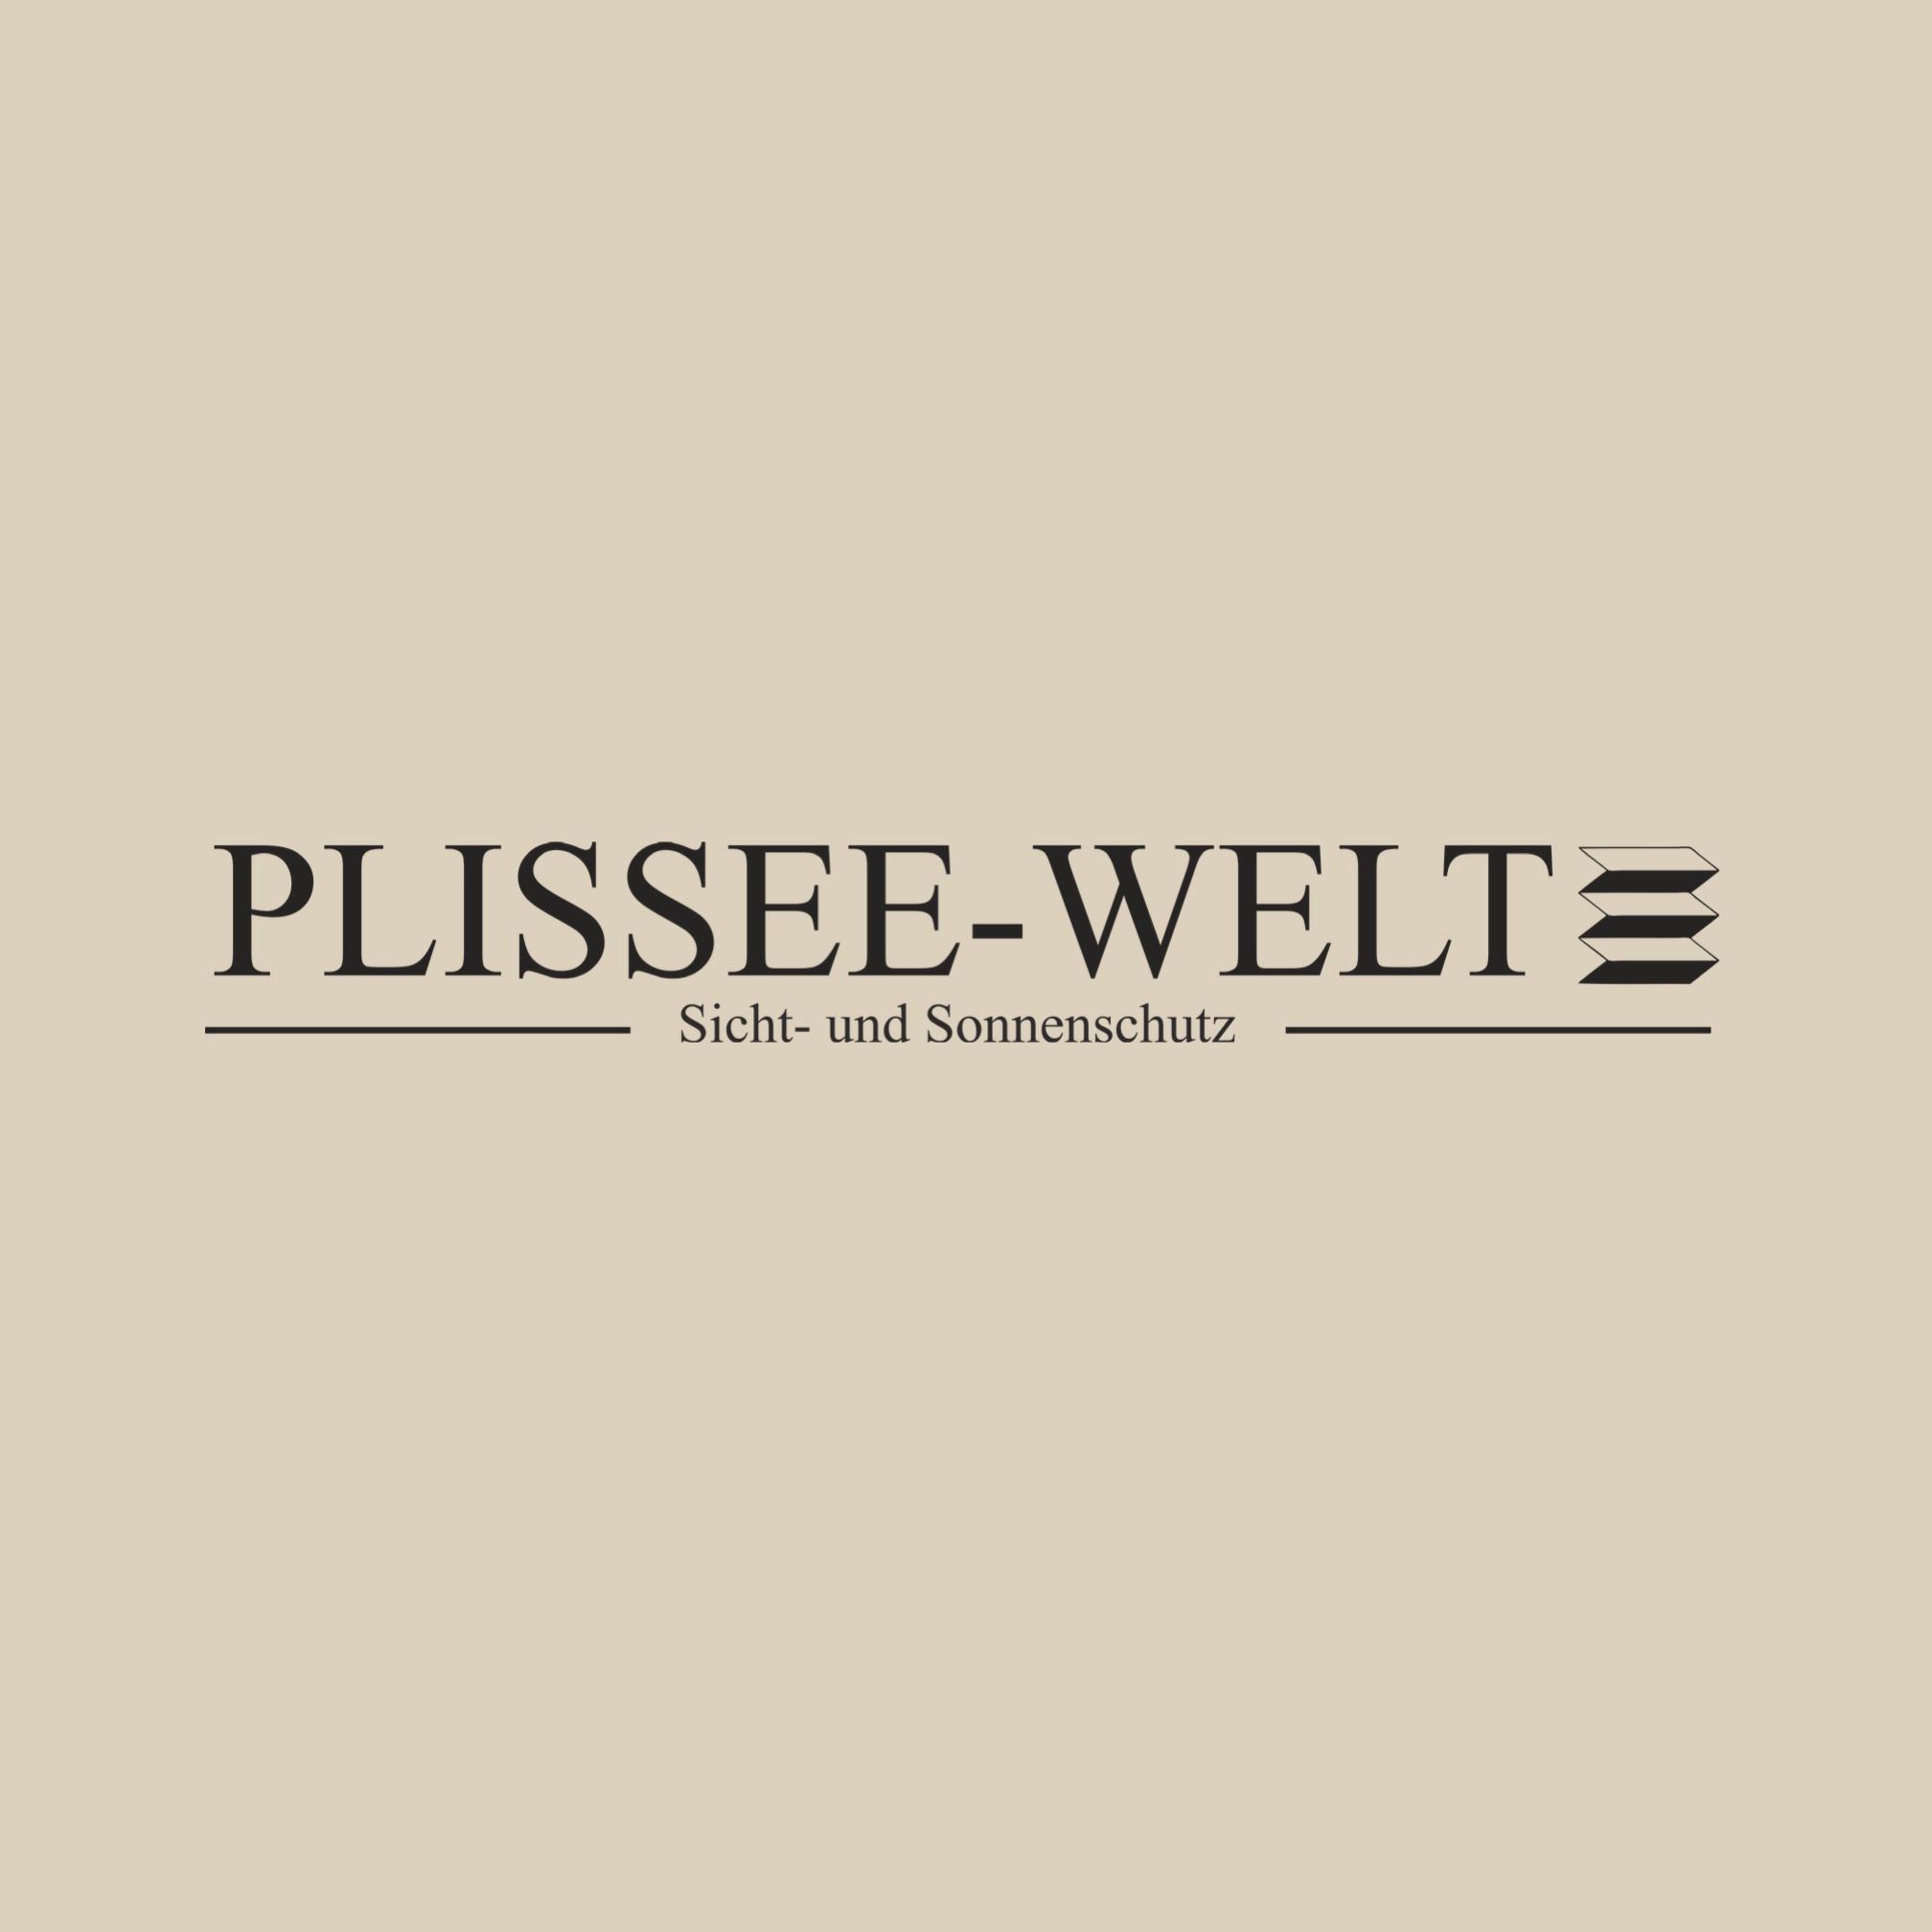 Logo Plissee-Welt